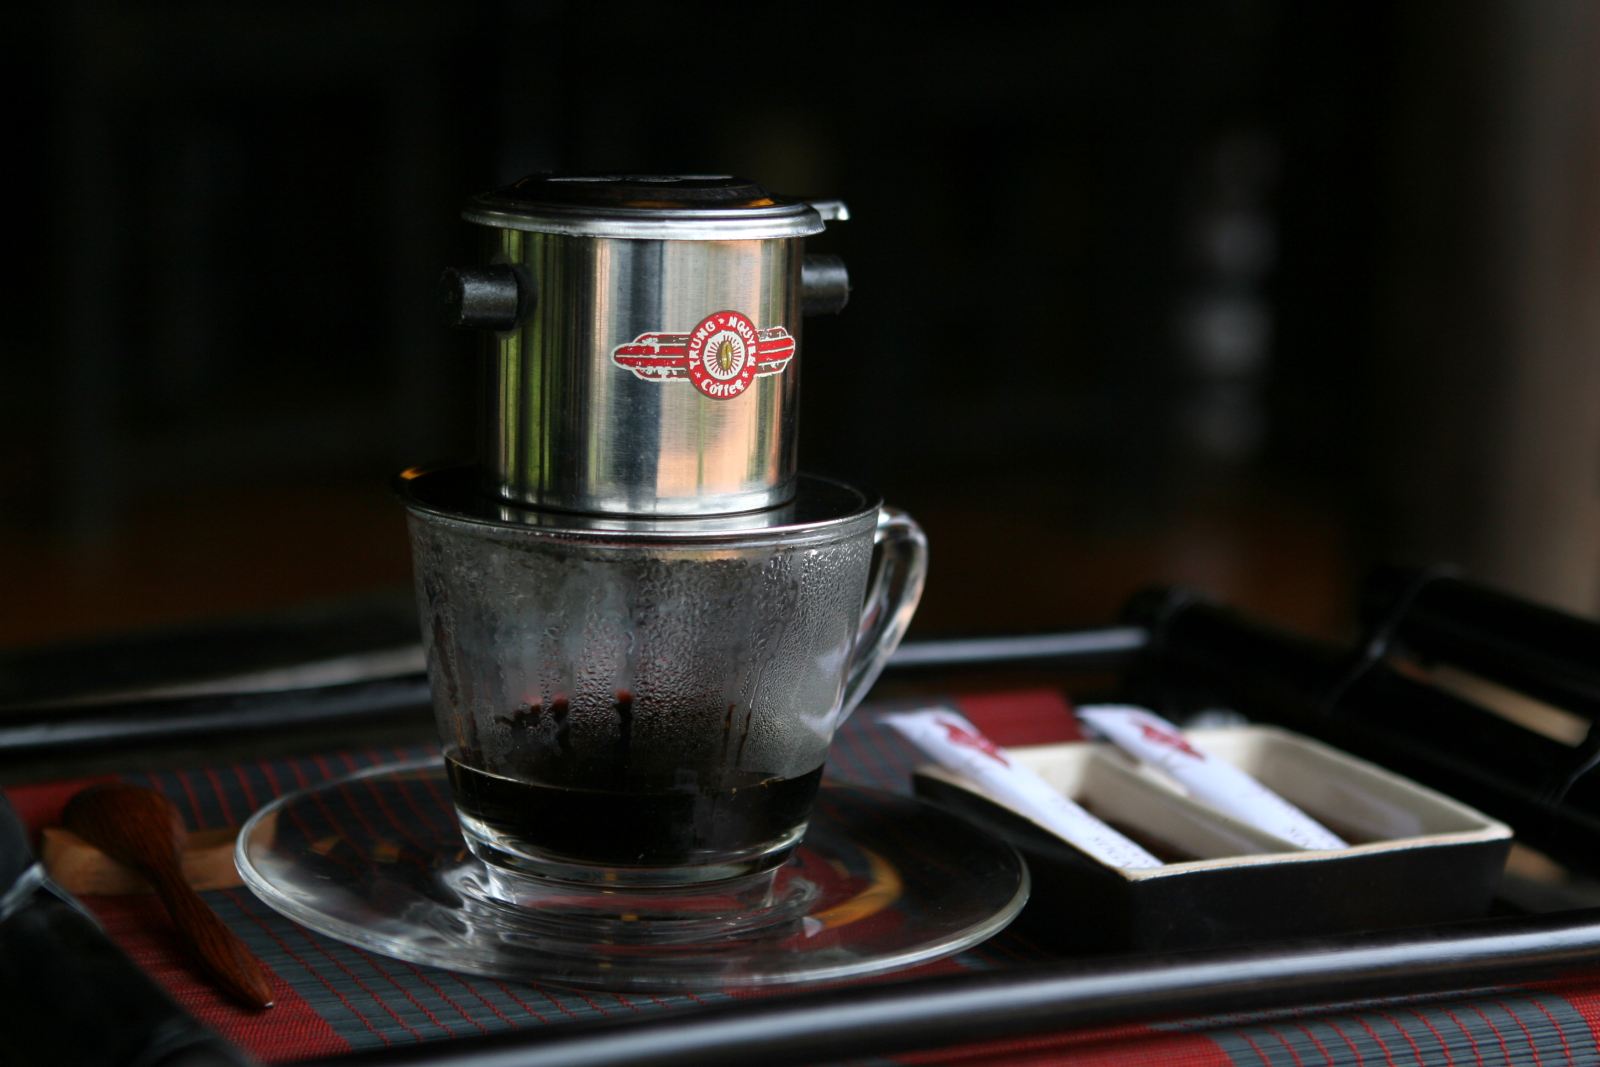 Hình ảnh ly cà phê đen: Sử dụng những hạt cà phê chất lượng, được nghiền mịn và pha chế đúng cách, ly cà phê đen sẽ mang lại hương vị đậm đà, thơm ngon đến khó quên. Hãy dành chút thời gian để ngắm nhìn những hình ảnh ly cà phê đen đầy mê hoặc này.